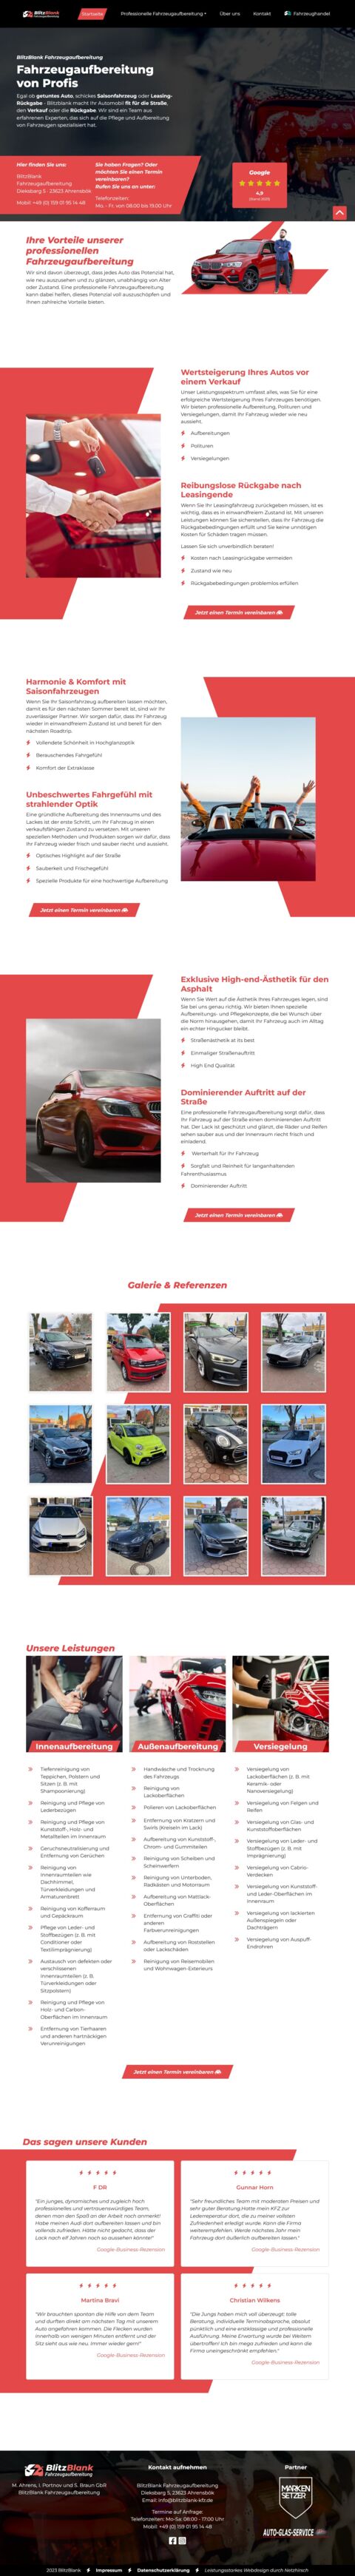 Screenshot der neuen Startseite der Website von BlitzBlank Fahrzeugaufbereitung nach erfolgtem Relaunch